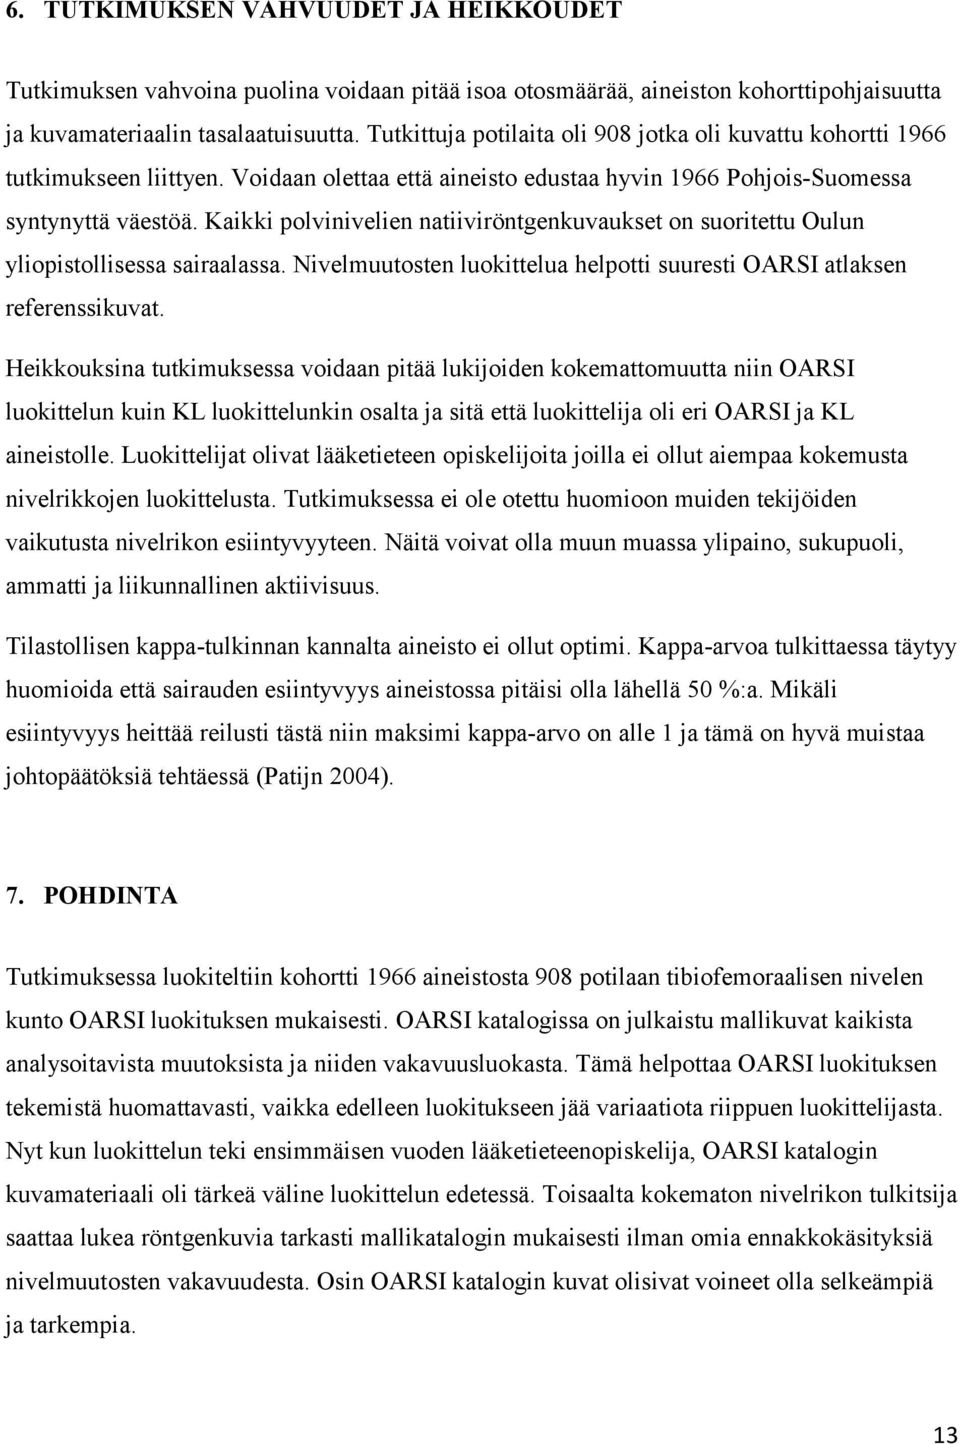 Kaikki polvinivelien natiiviröntgenkuvaukset on suoritettu Oulun yliopistollisessa sairaalassa. Nivelmuutosten luokittelua helpotti suuresti OARSI atlaksen referenssikuvat.